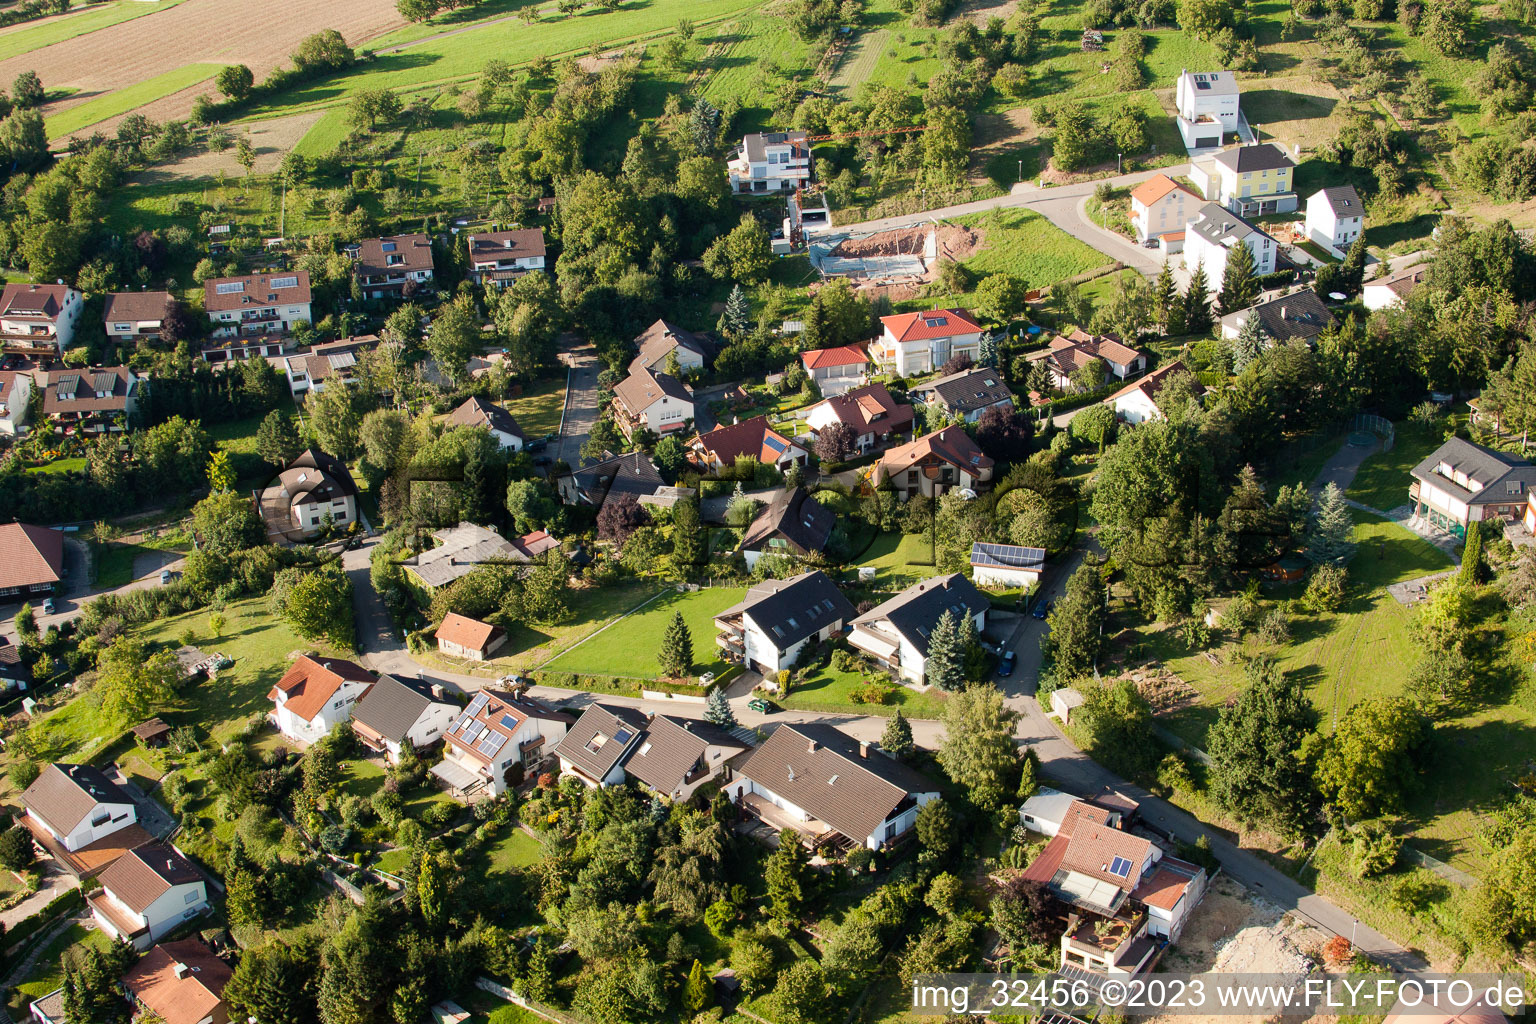 Keltern im Bundesland Baden-Württemberg, Deutschland aus der Drohnenperspektive